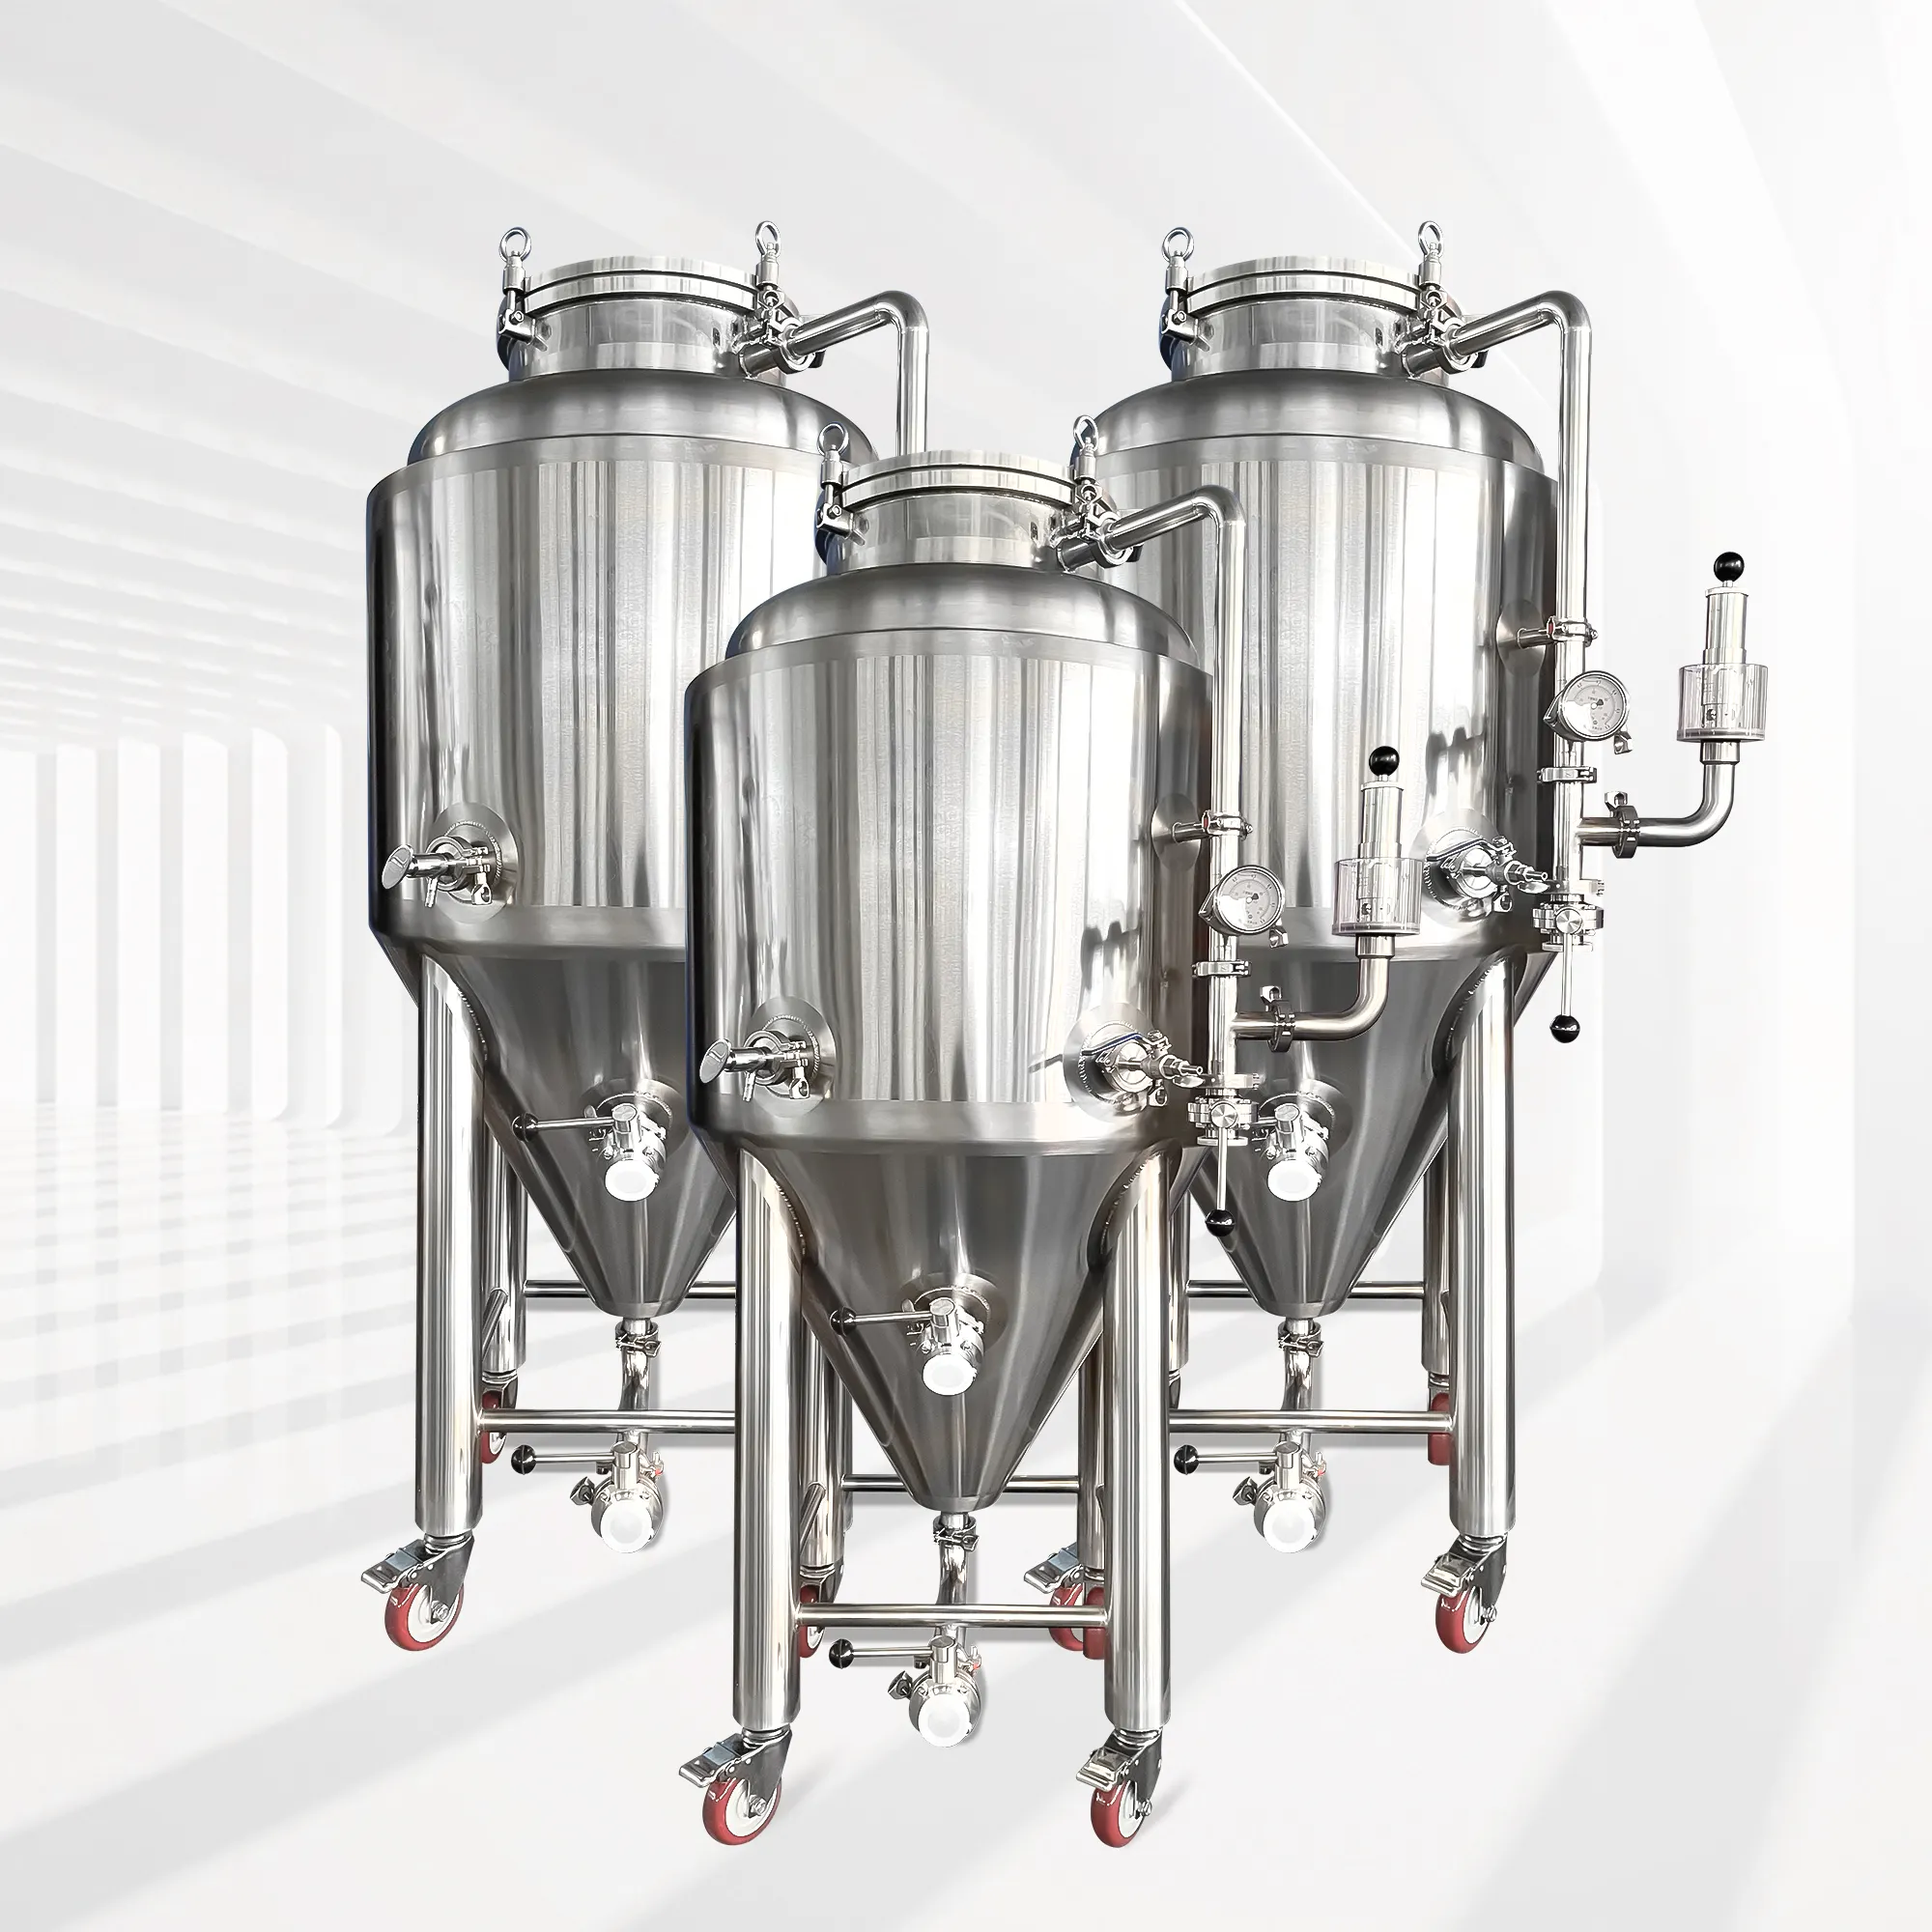 อุปกรณ์หมัก2BBL 200L ถังสแตนเลสสำหรับหมักเบียร์ผลิตในประเทศจีน